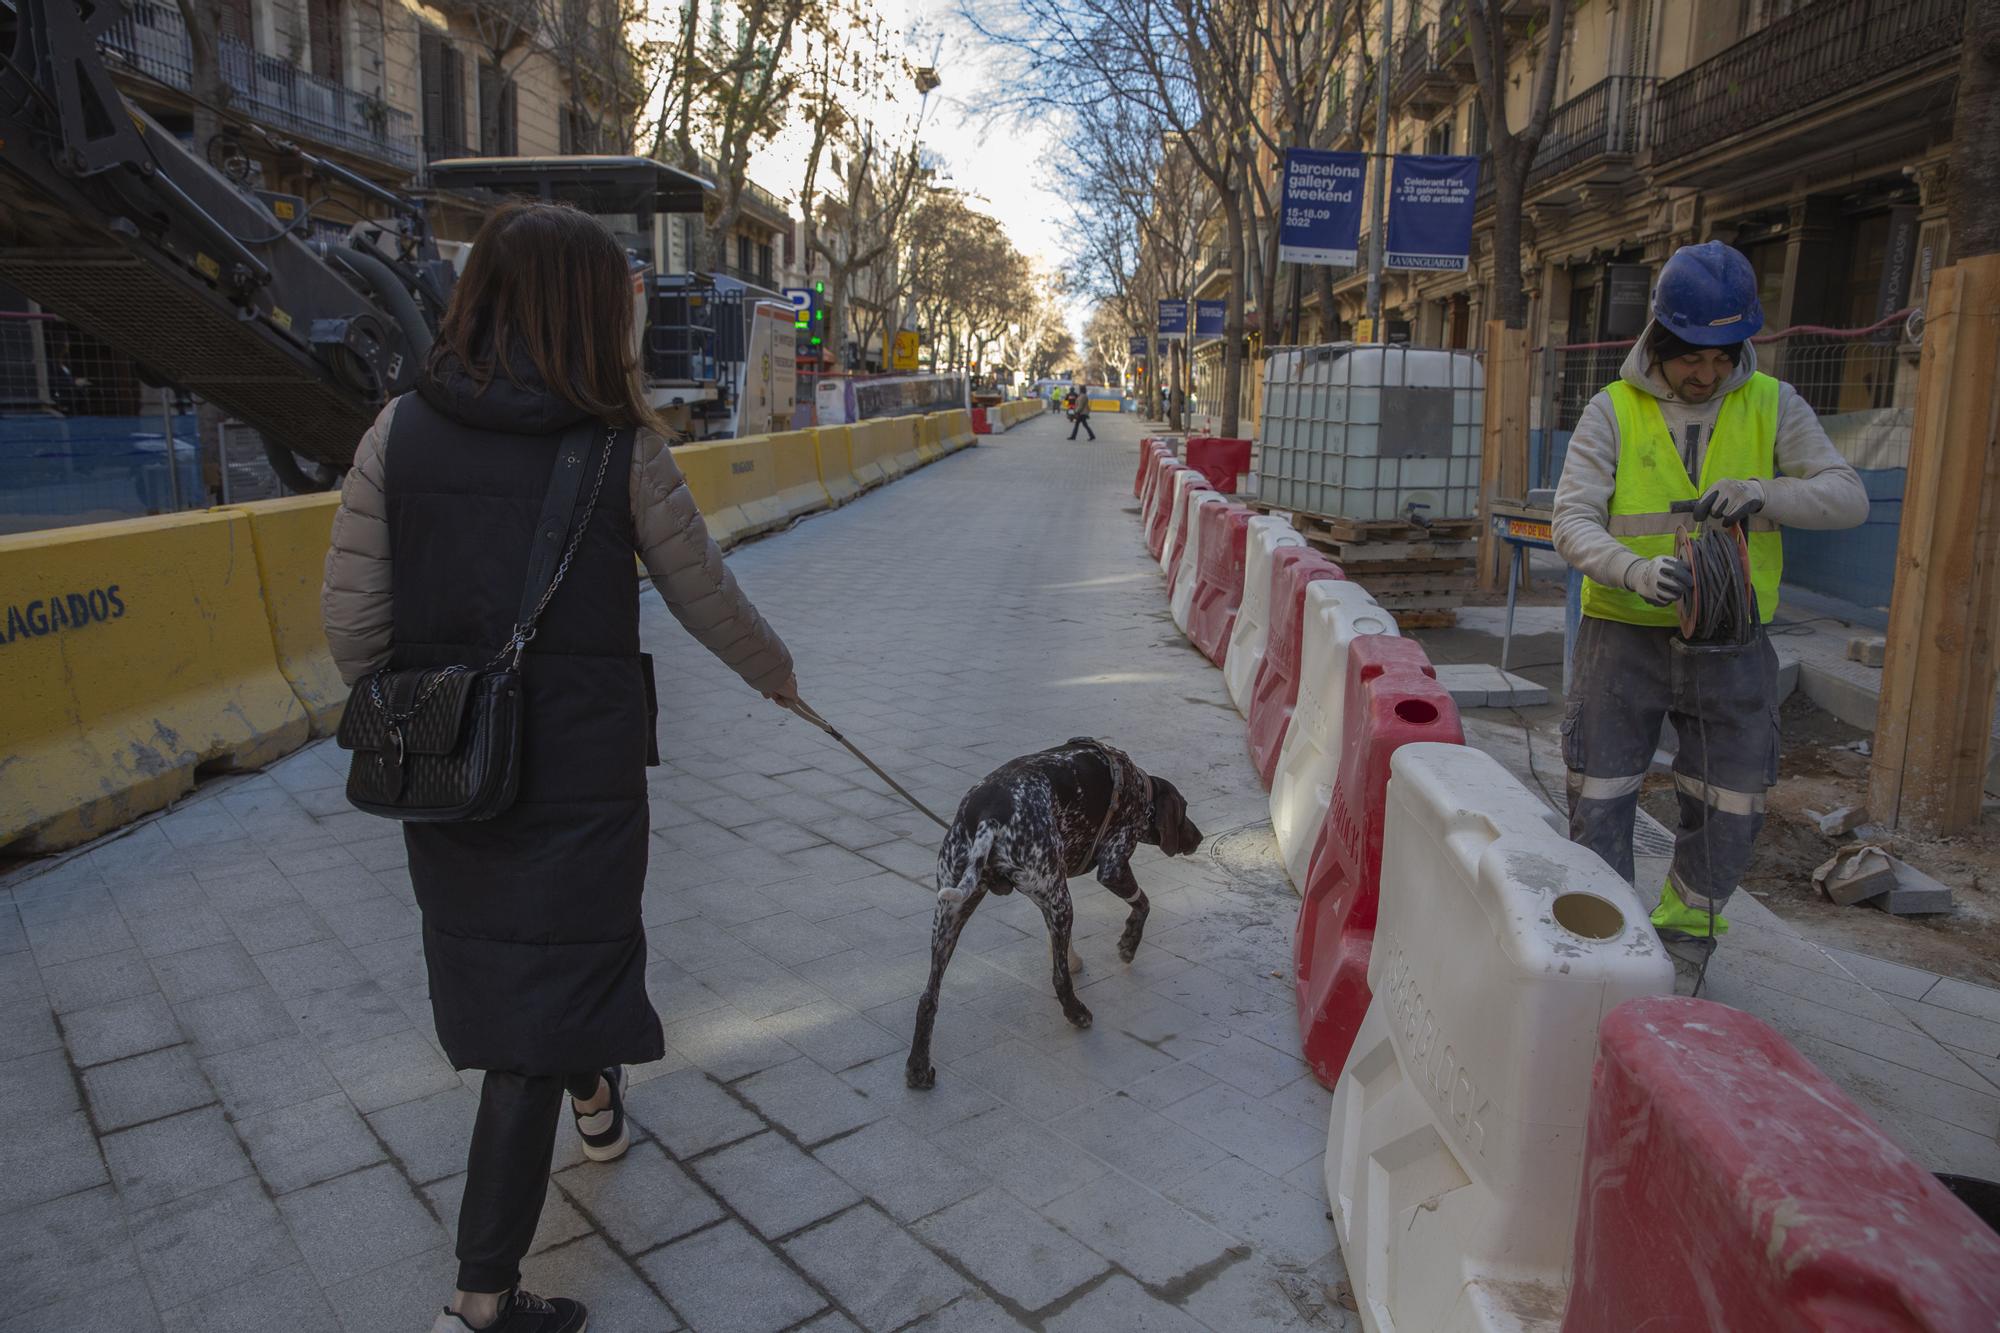 Vista de Consell de Cent entre Balmes y paseo de Gràcia, a punto de entrar en una fase de las obras de la 'superilla'.